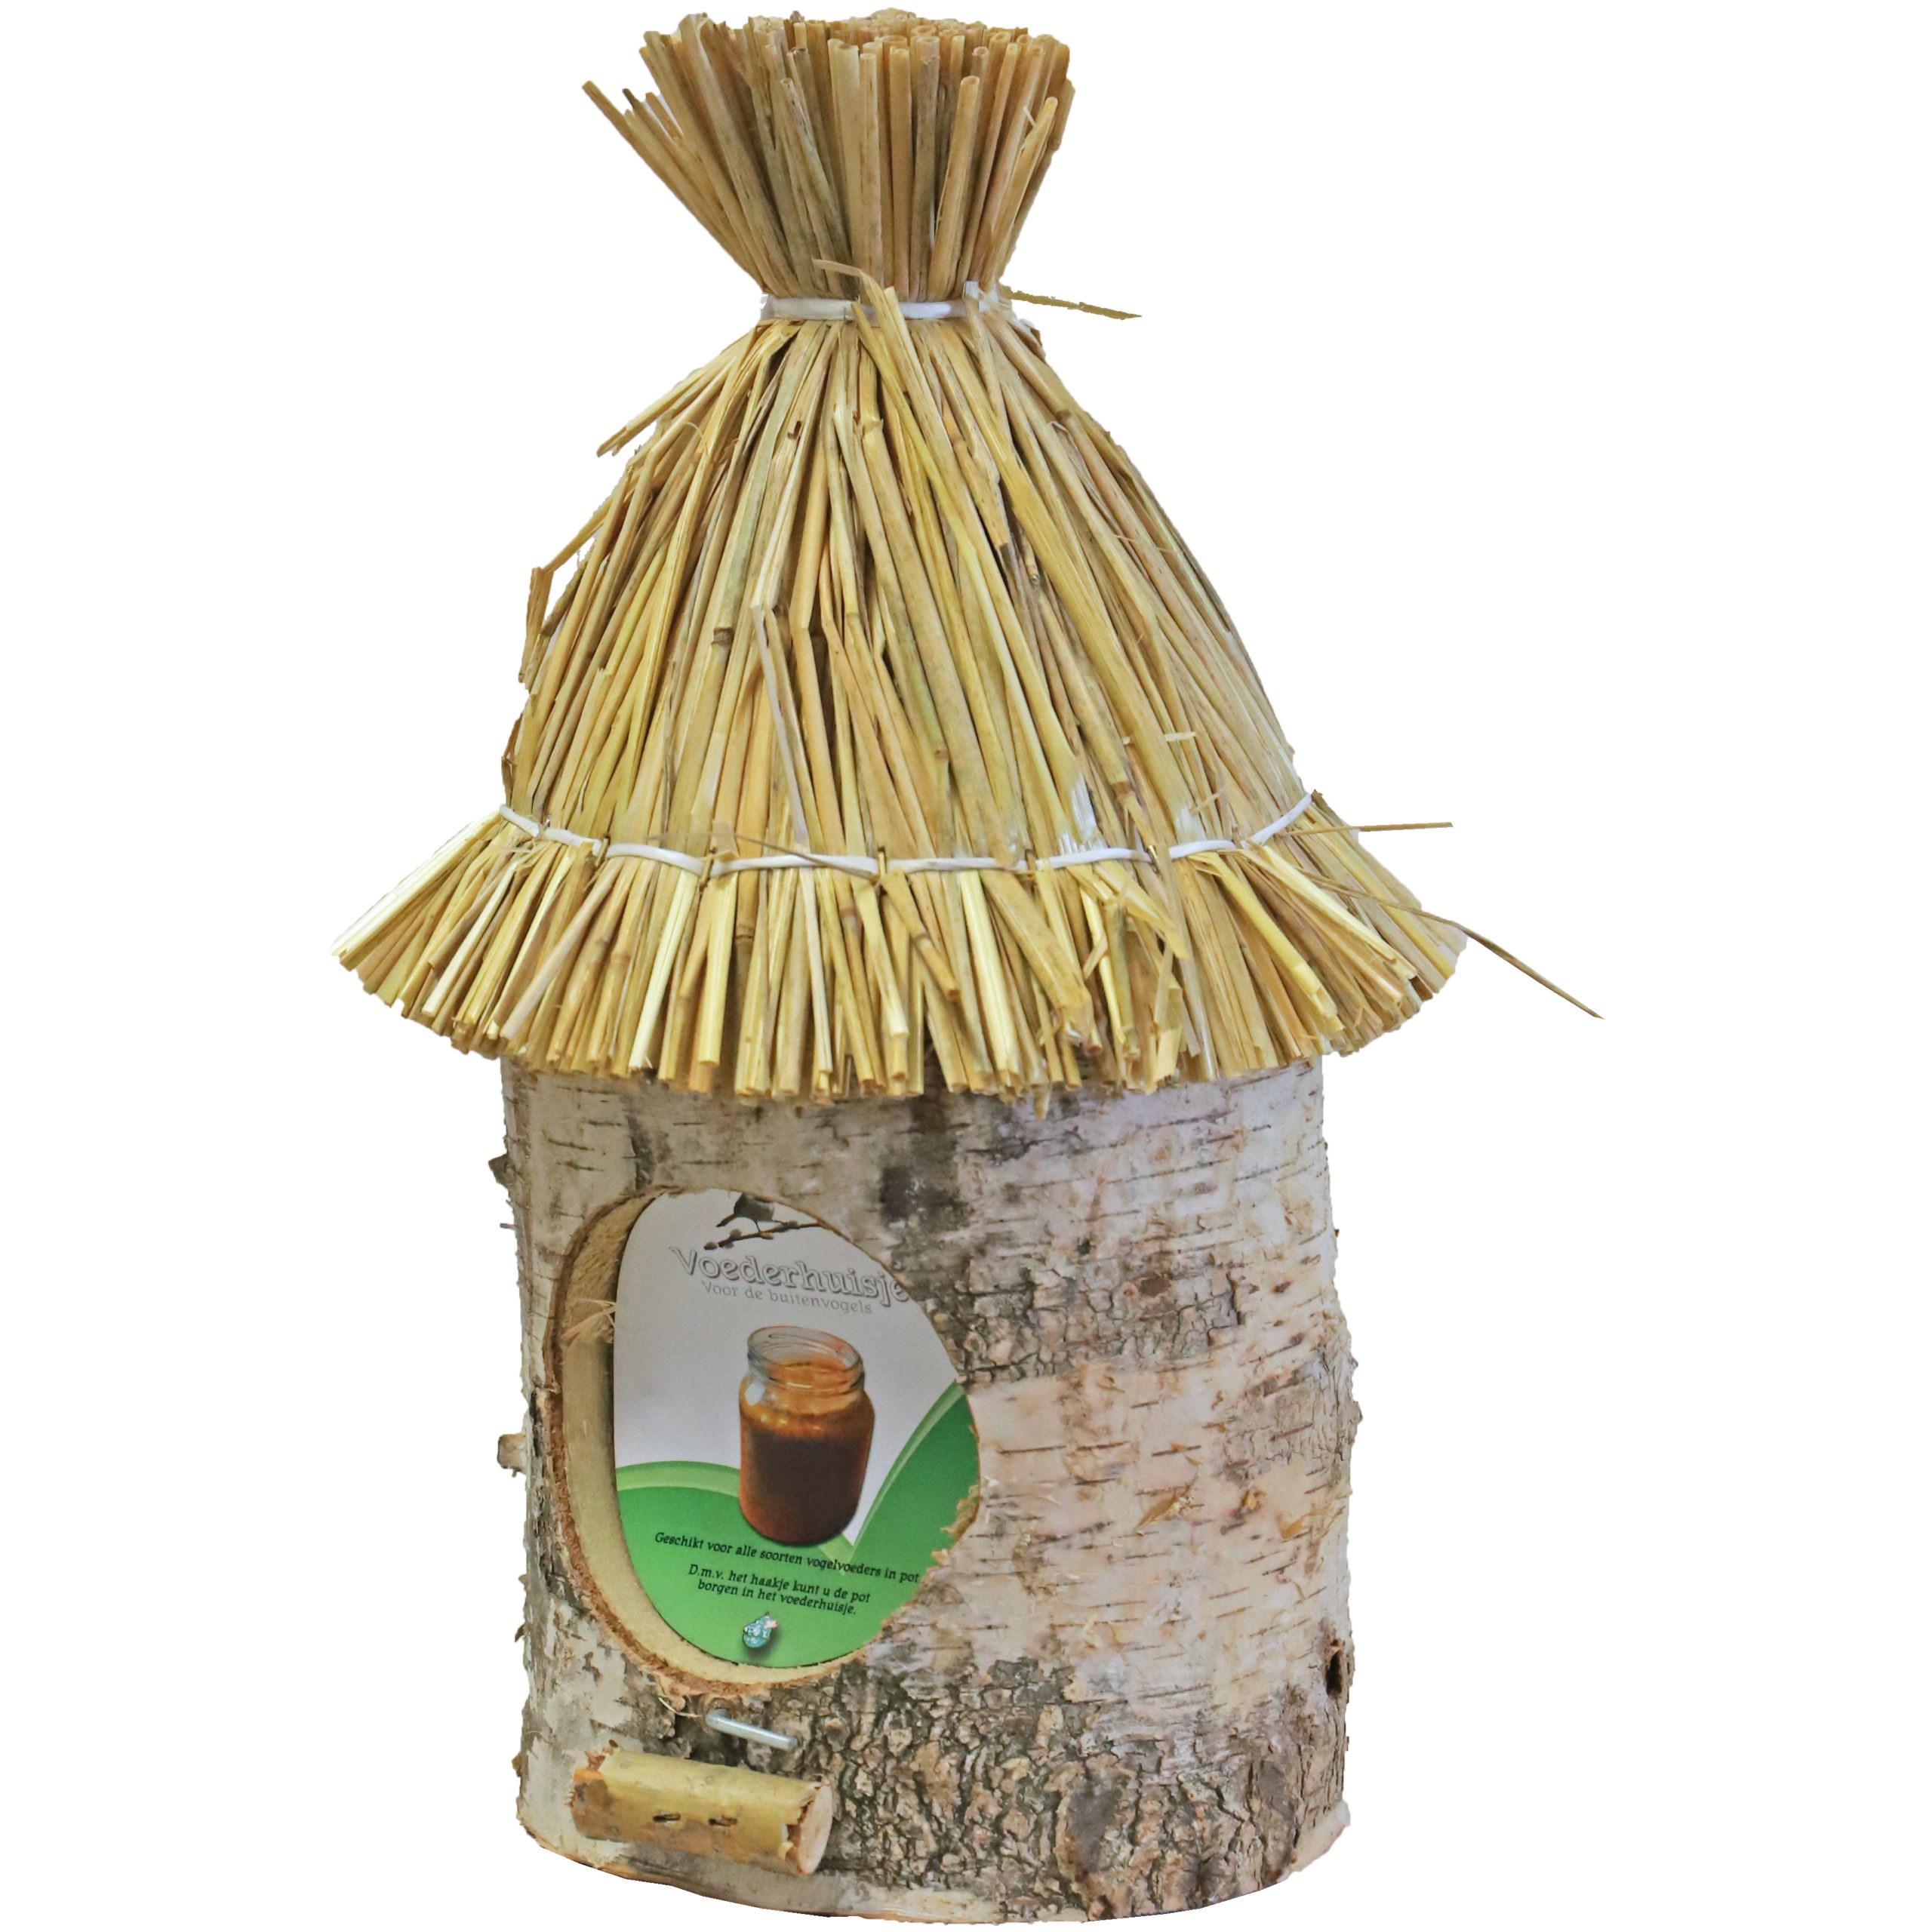 Vogelhuisje-voederhuisje-pindakaashuisje berkenhout met stro dak 36 cm